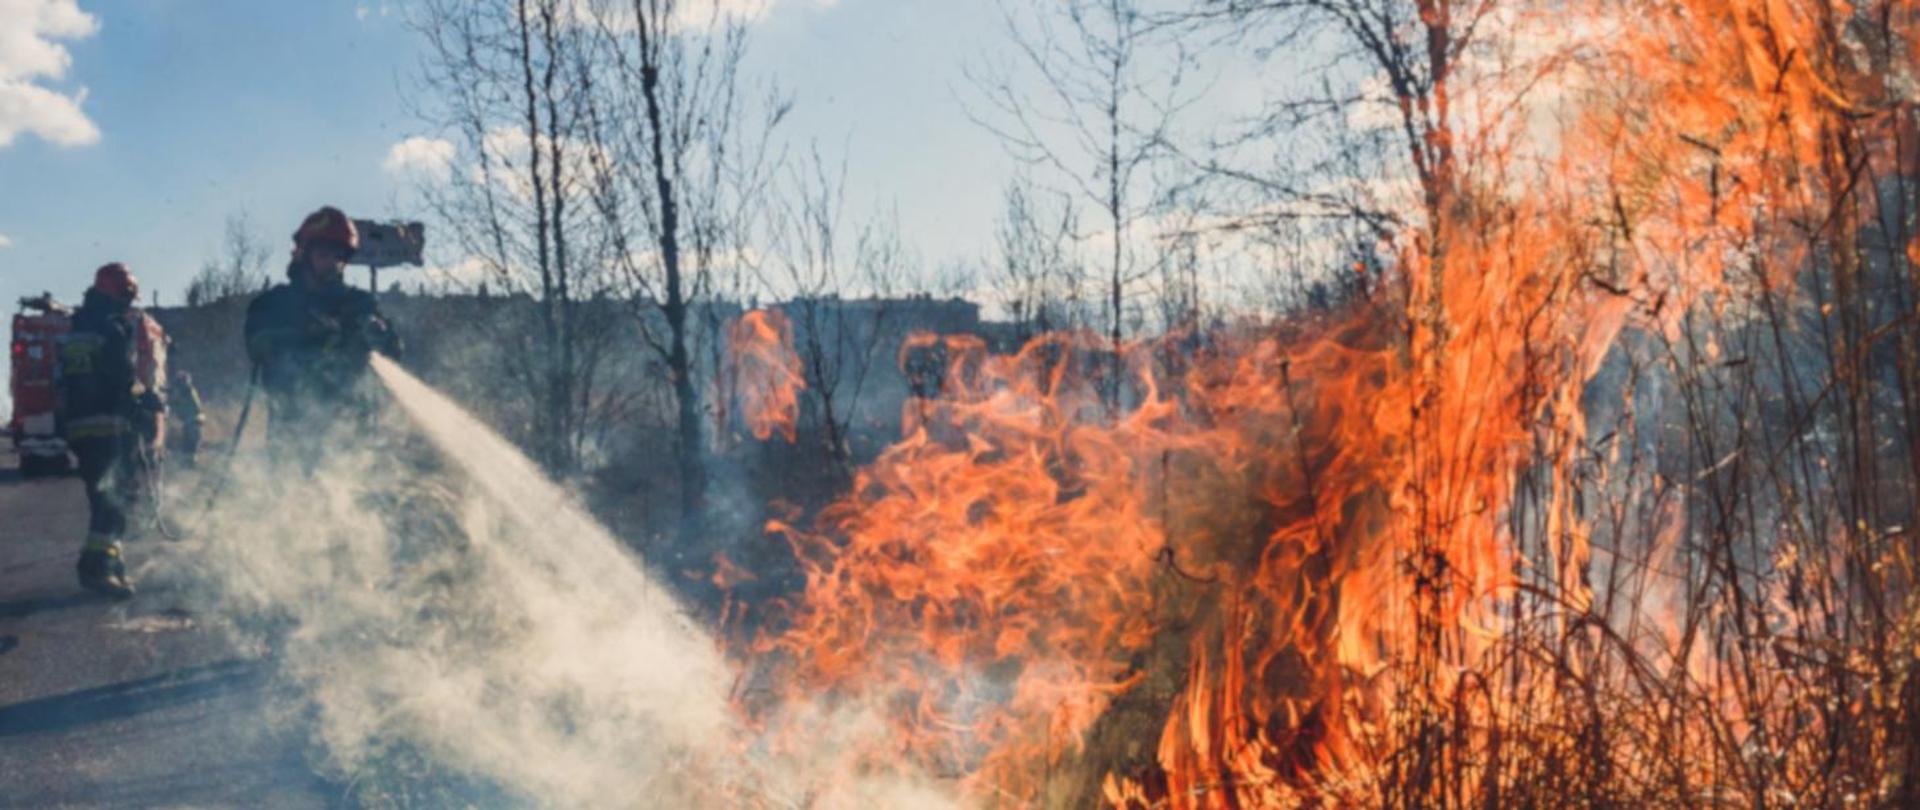 Pożar traw i nieużytków rolnych, strażacy po lewo gaszą pożar